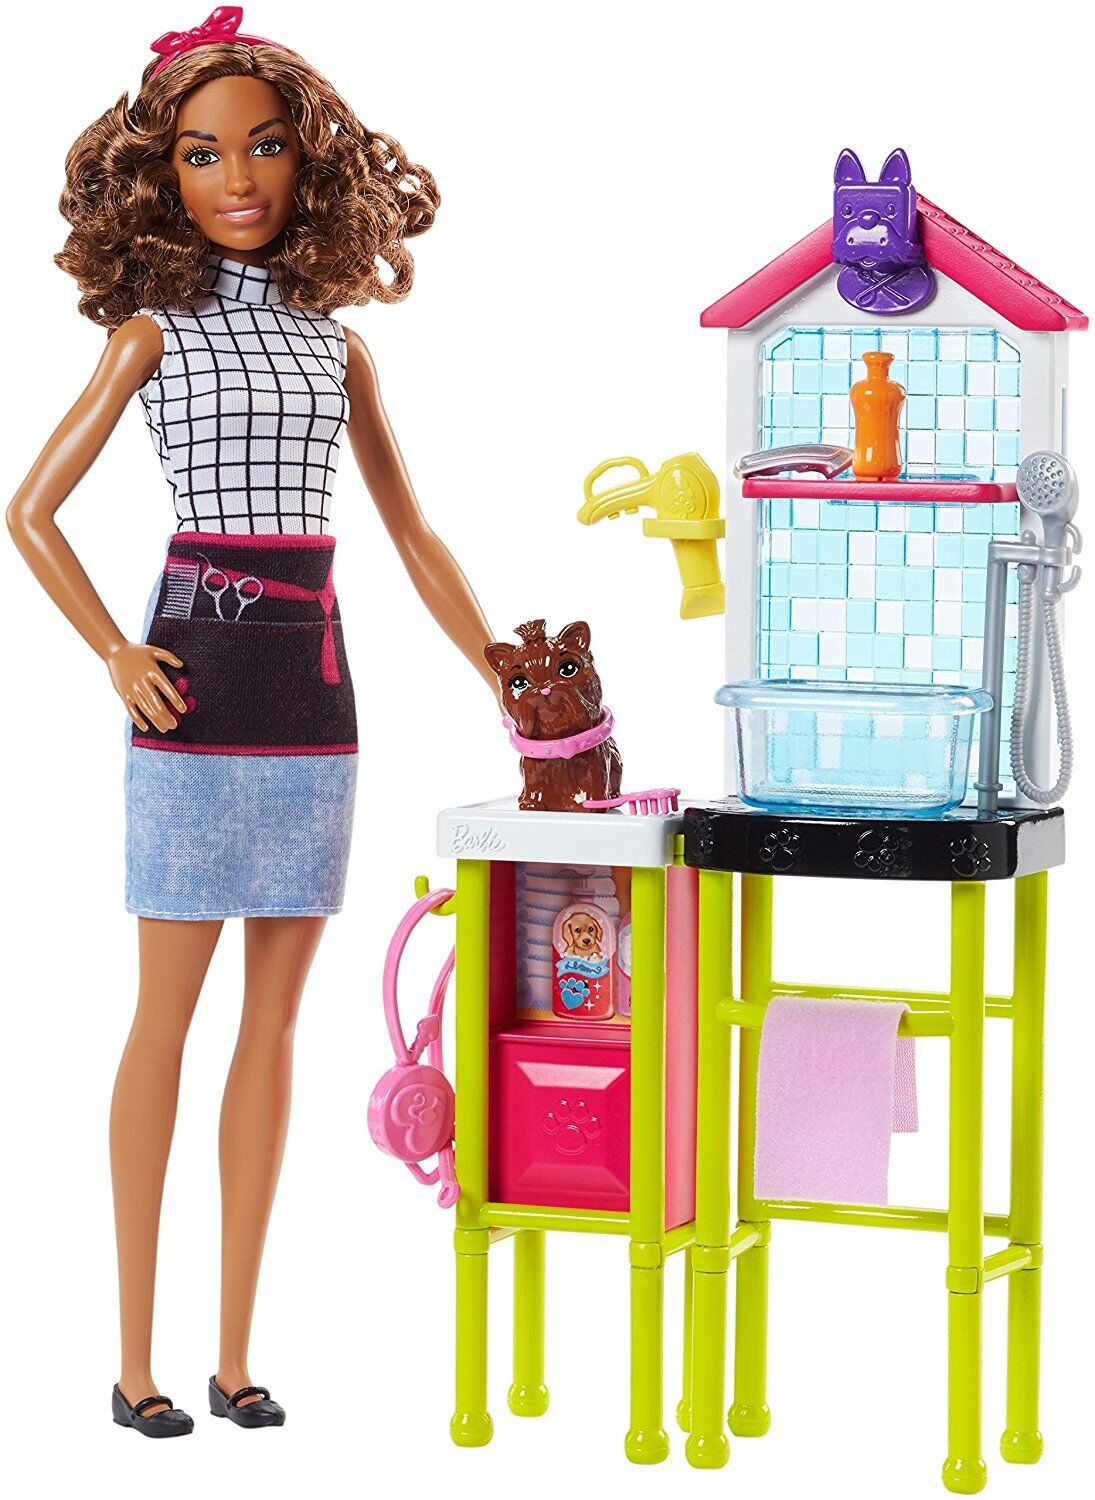 Geef energie bloem plein Barbie Careers Pet Groomer Playset DHB63/FJB31 NEW 887961531855 | eBay